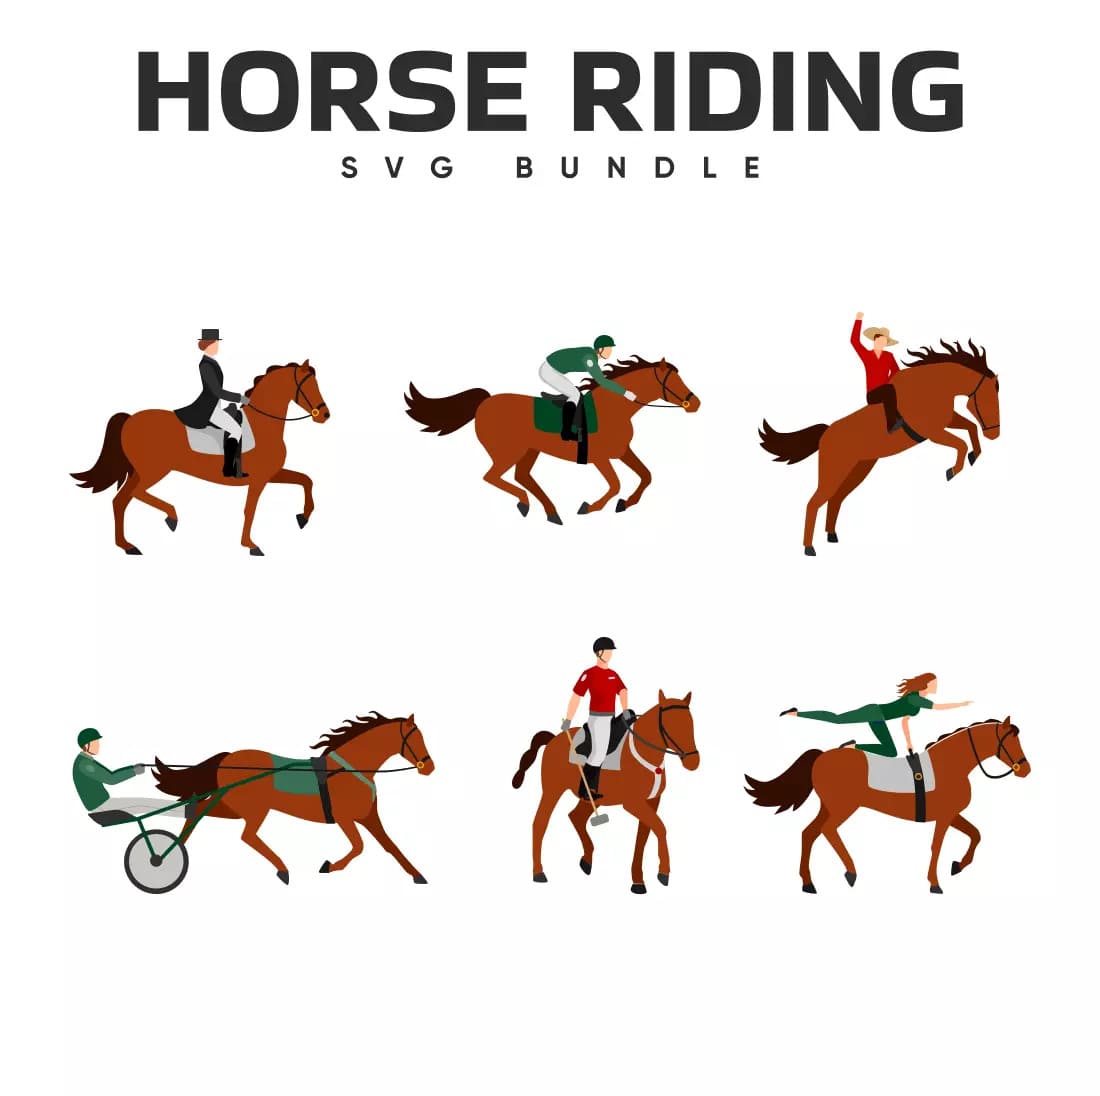 Horse riding svg bundle.